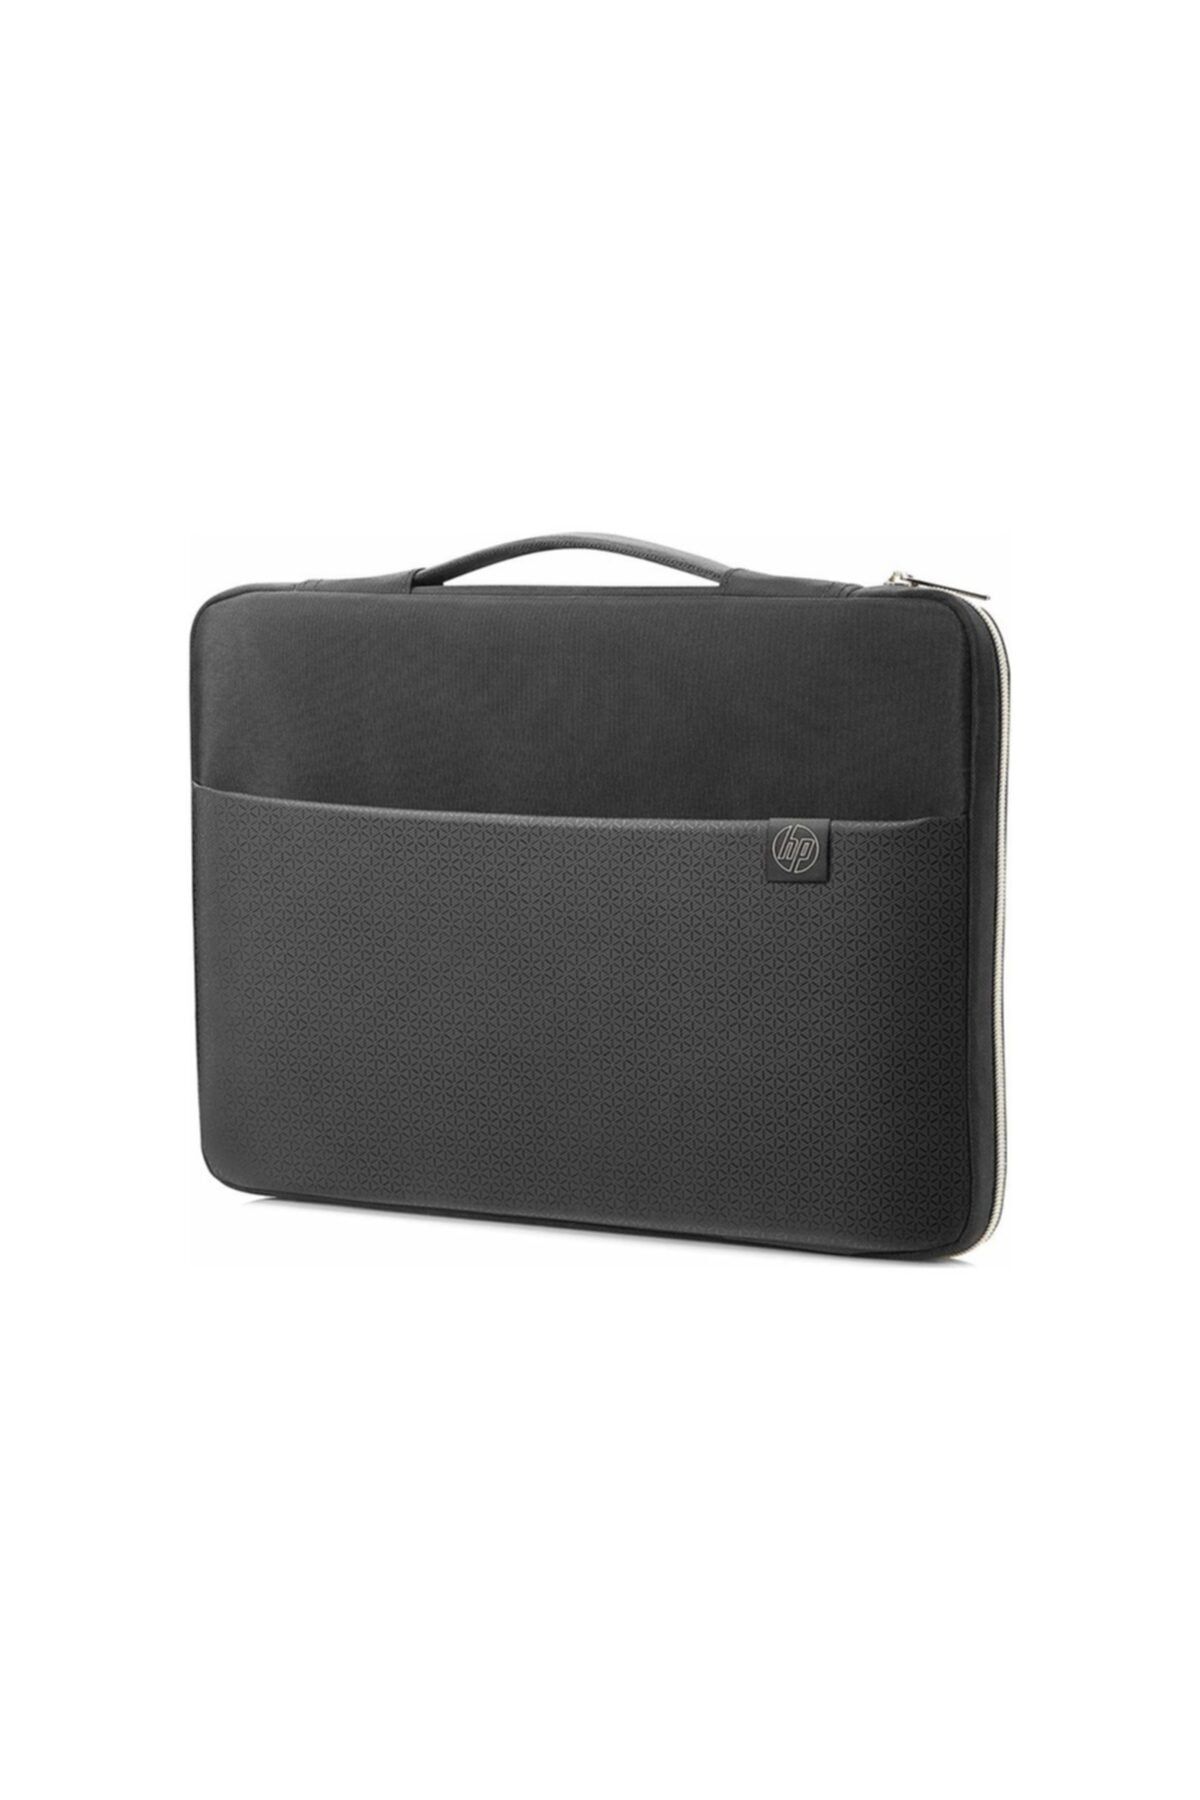 HP 15.6" Carry Sleeve Notebook Taşıma Kılıfı 3xd35aa